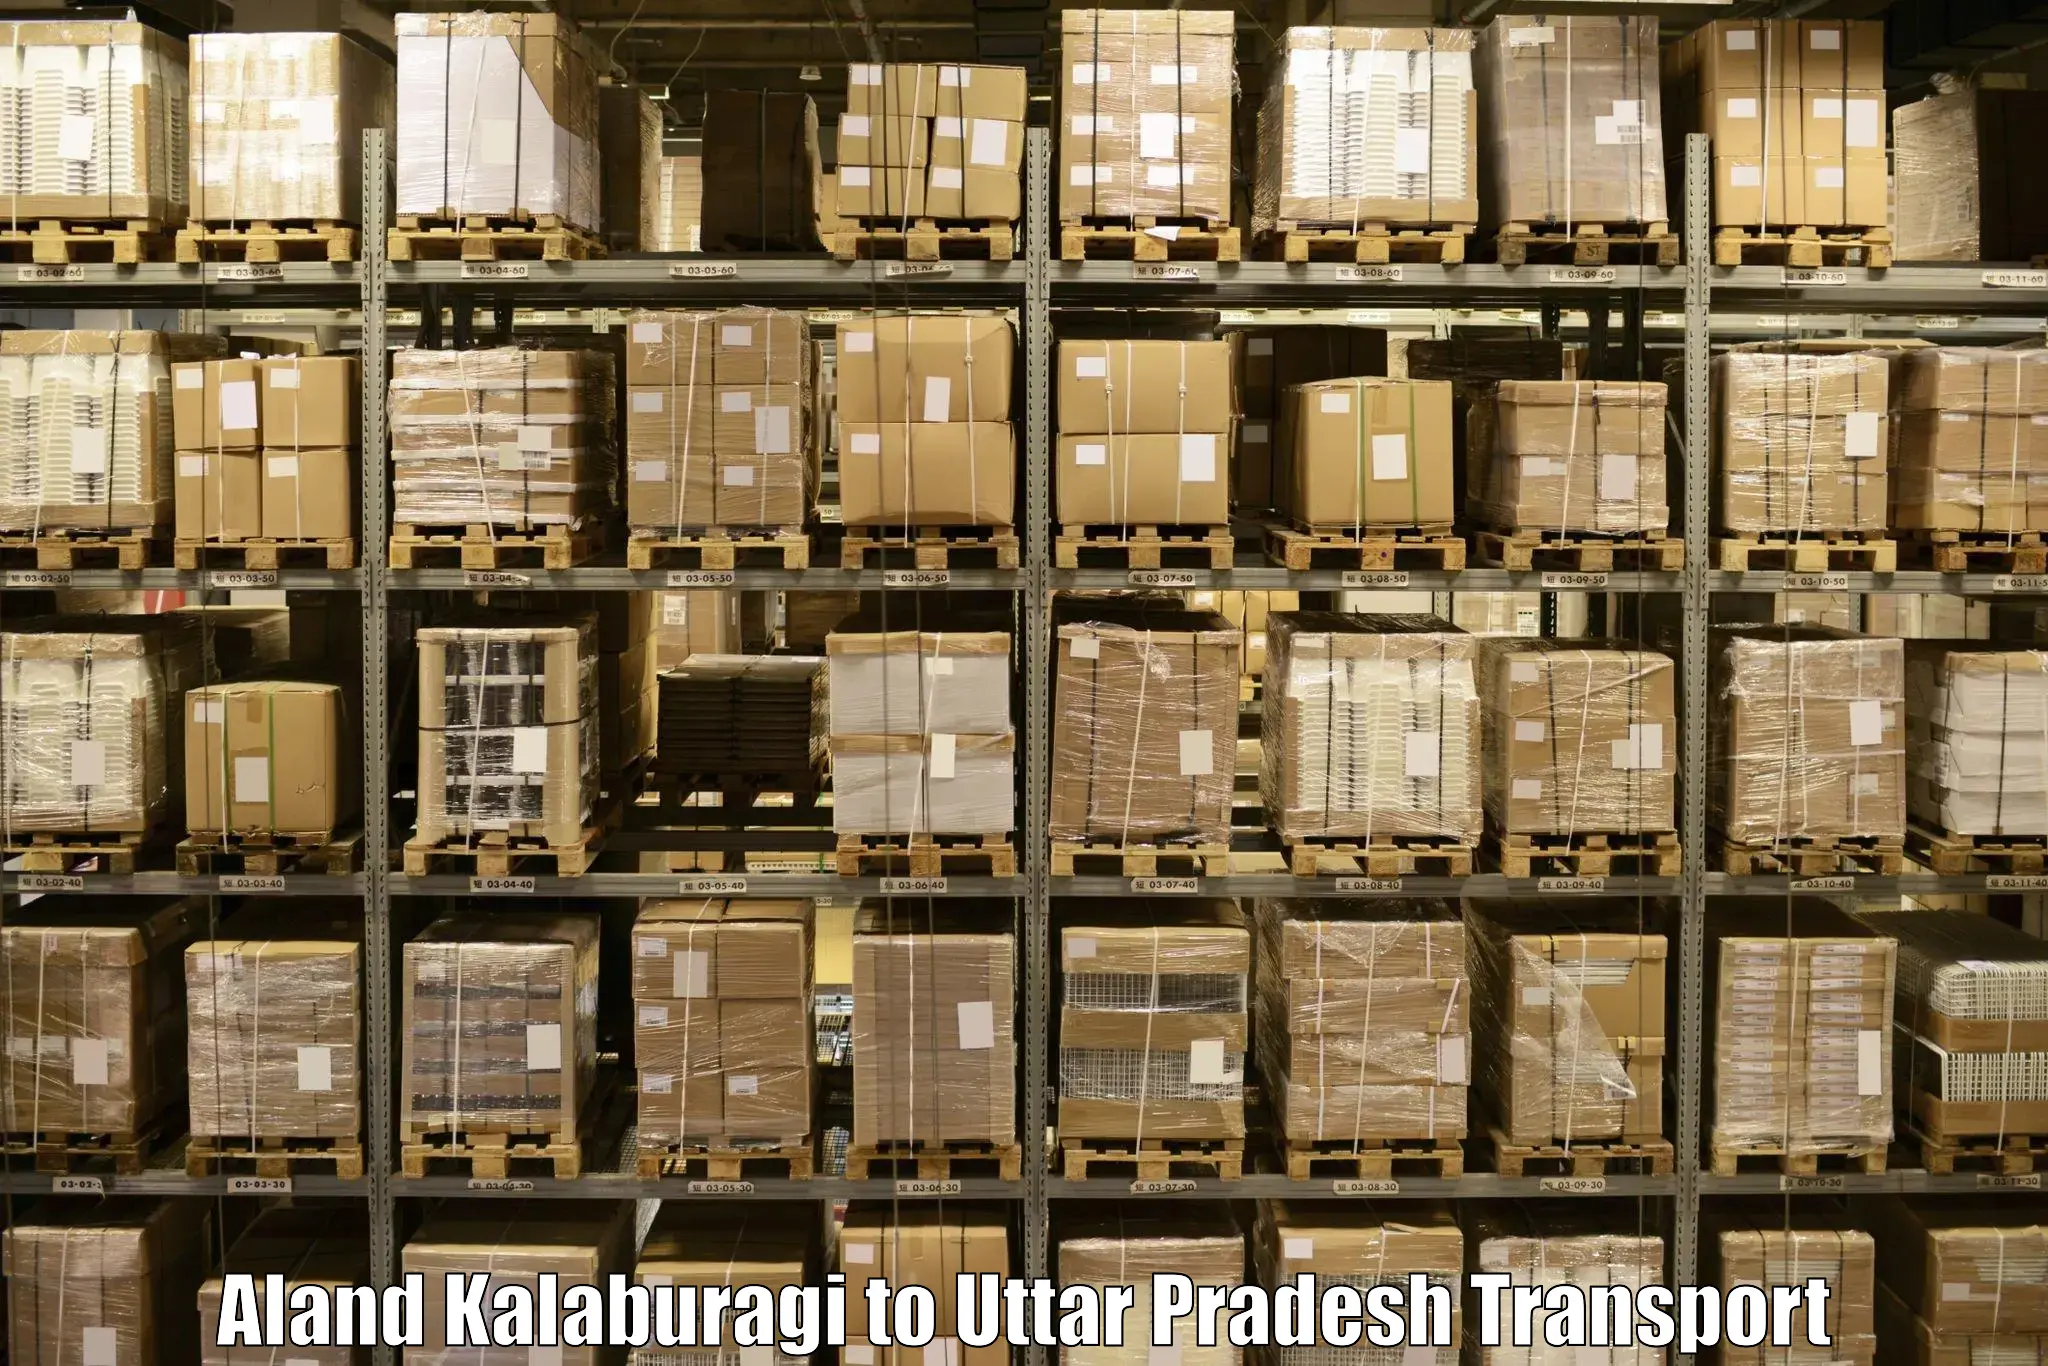 Furniture transport service Aland Kalaburagi to Behat